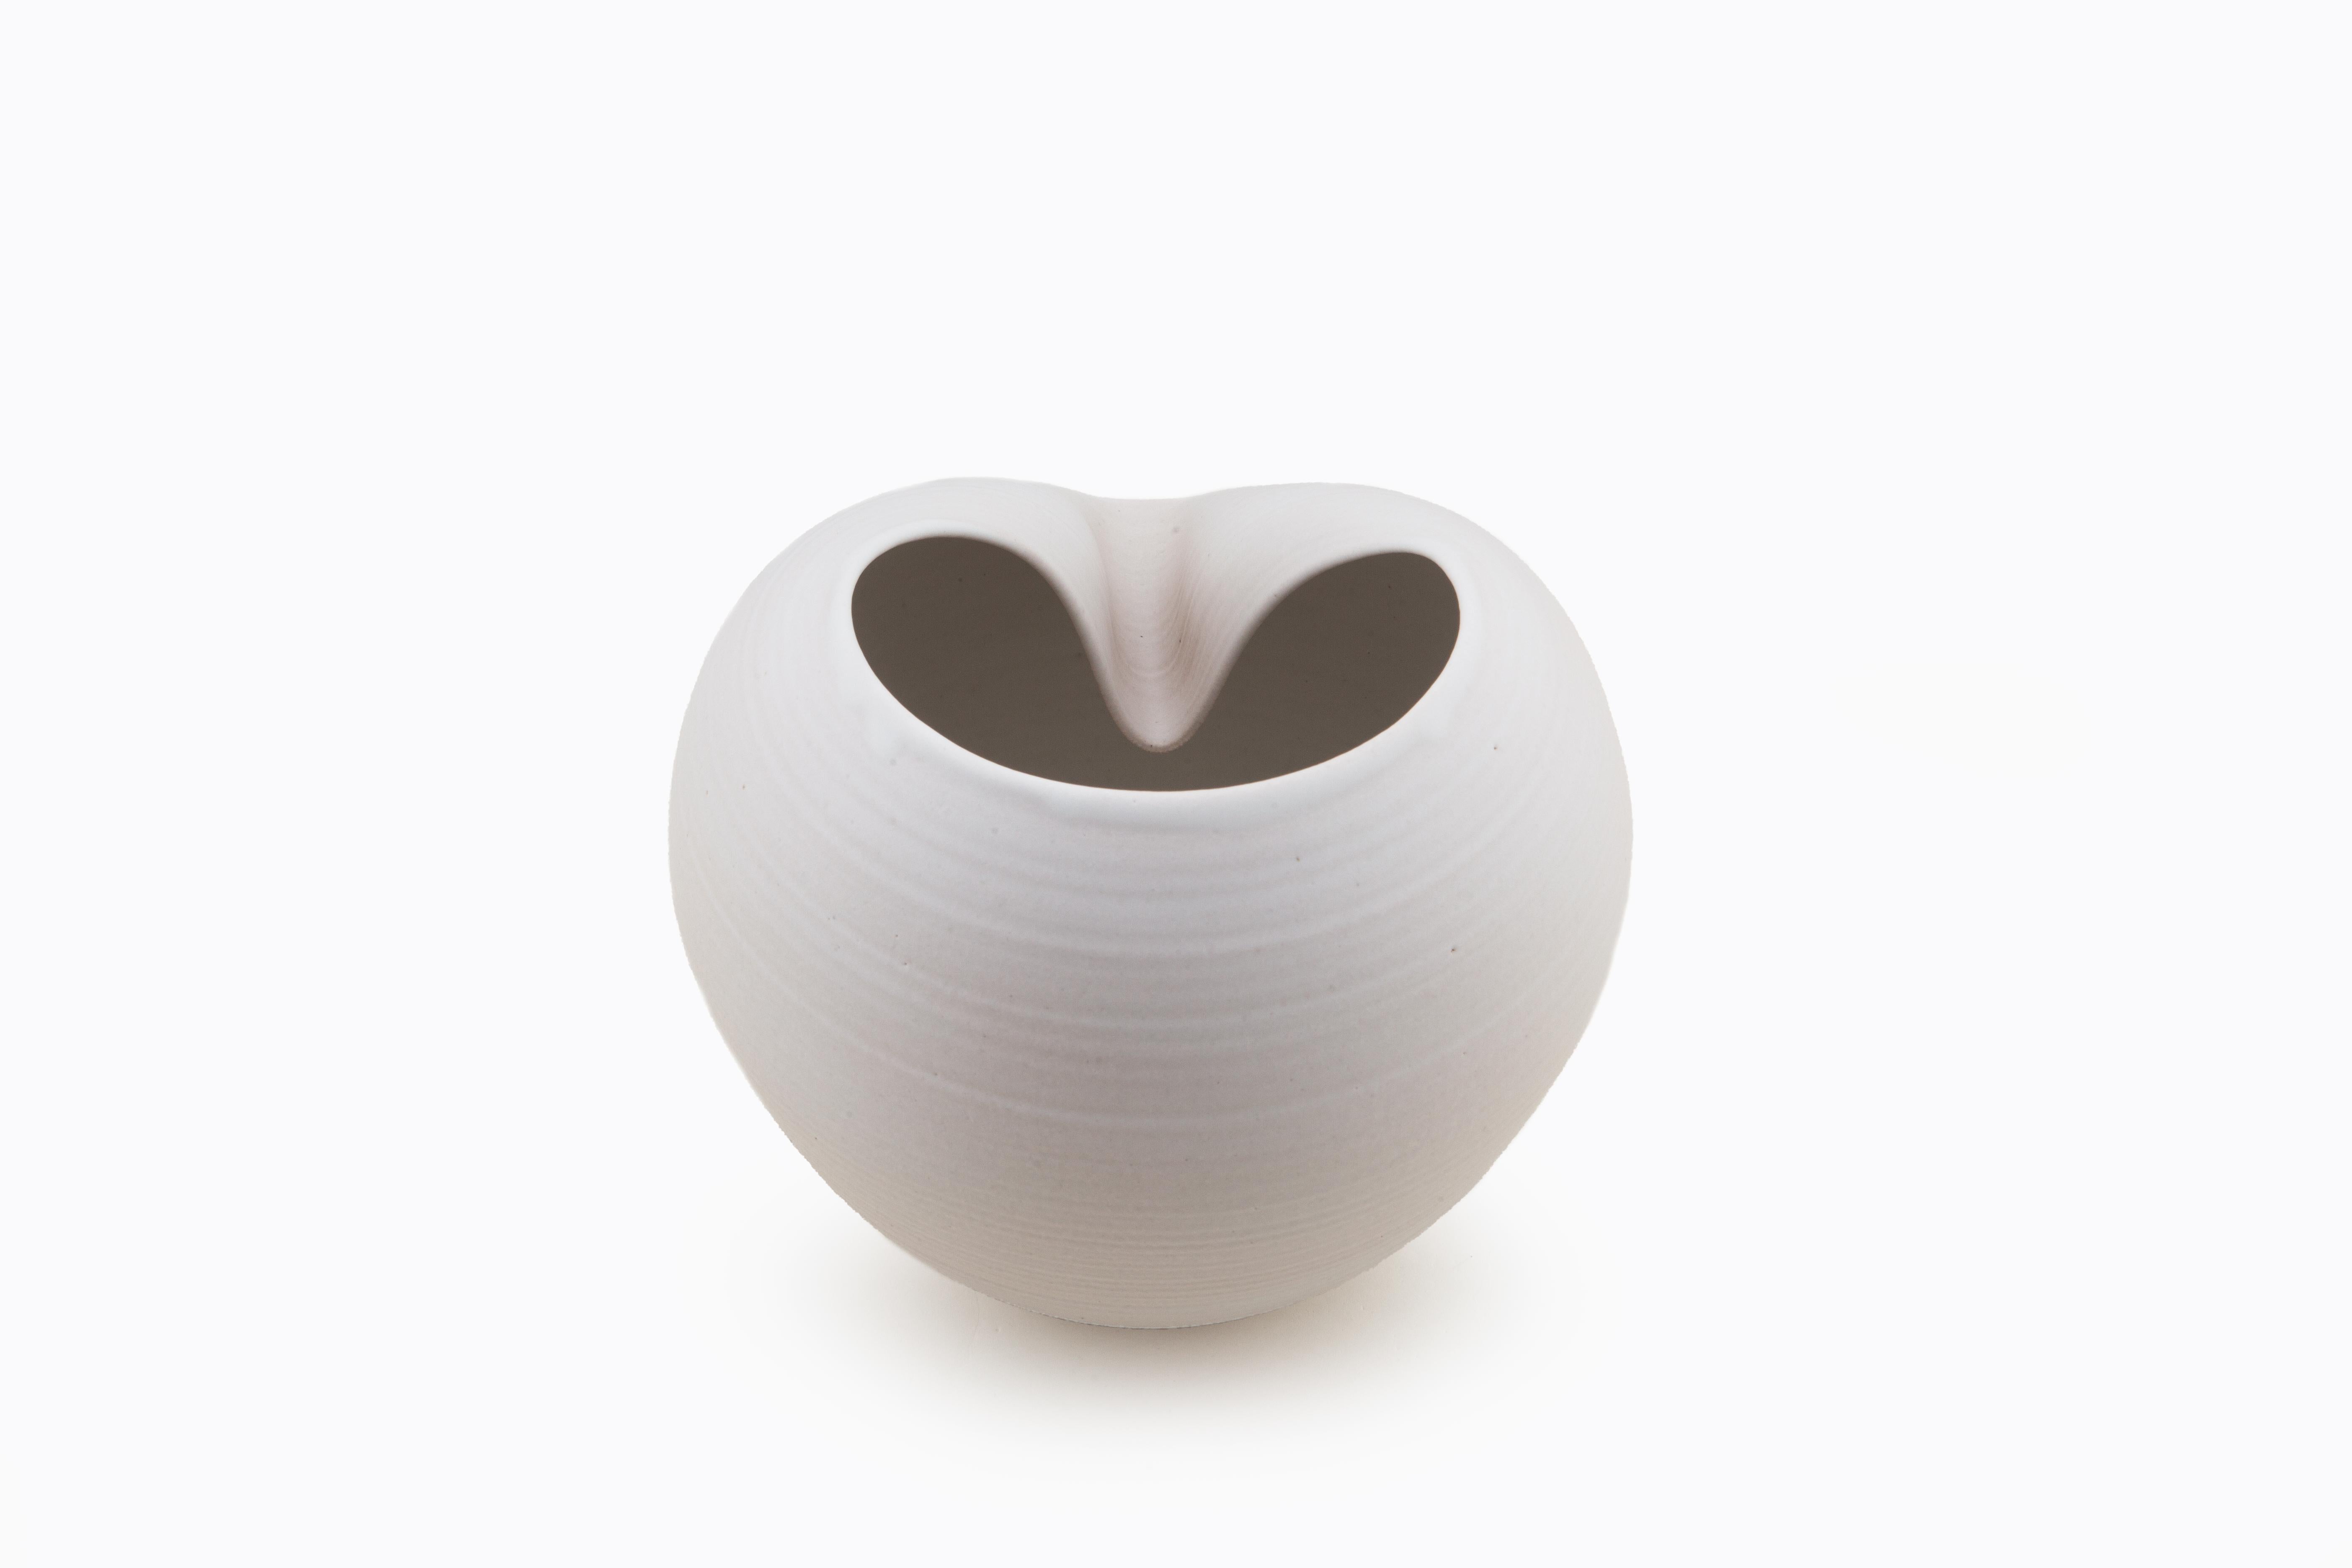 Organic Modern White Oval Form, Vase, Interior Sculpture or Vessel, Objet D'Art